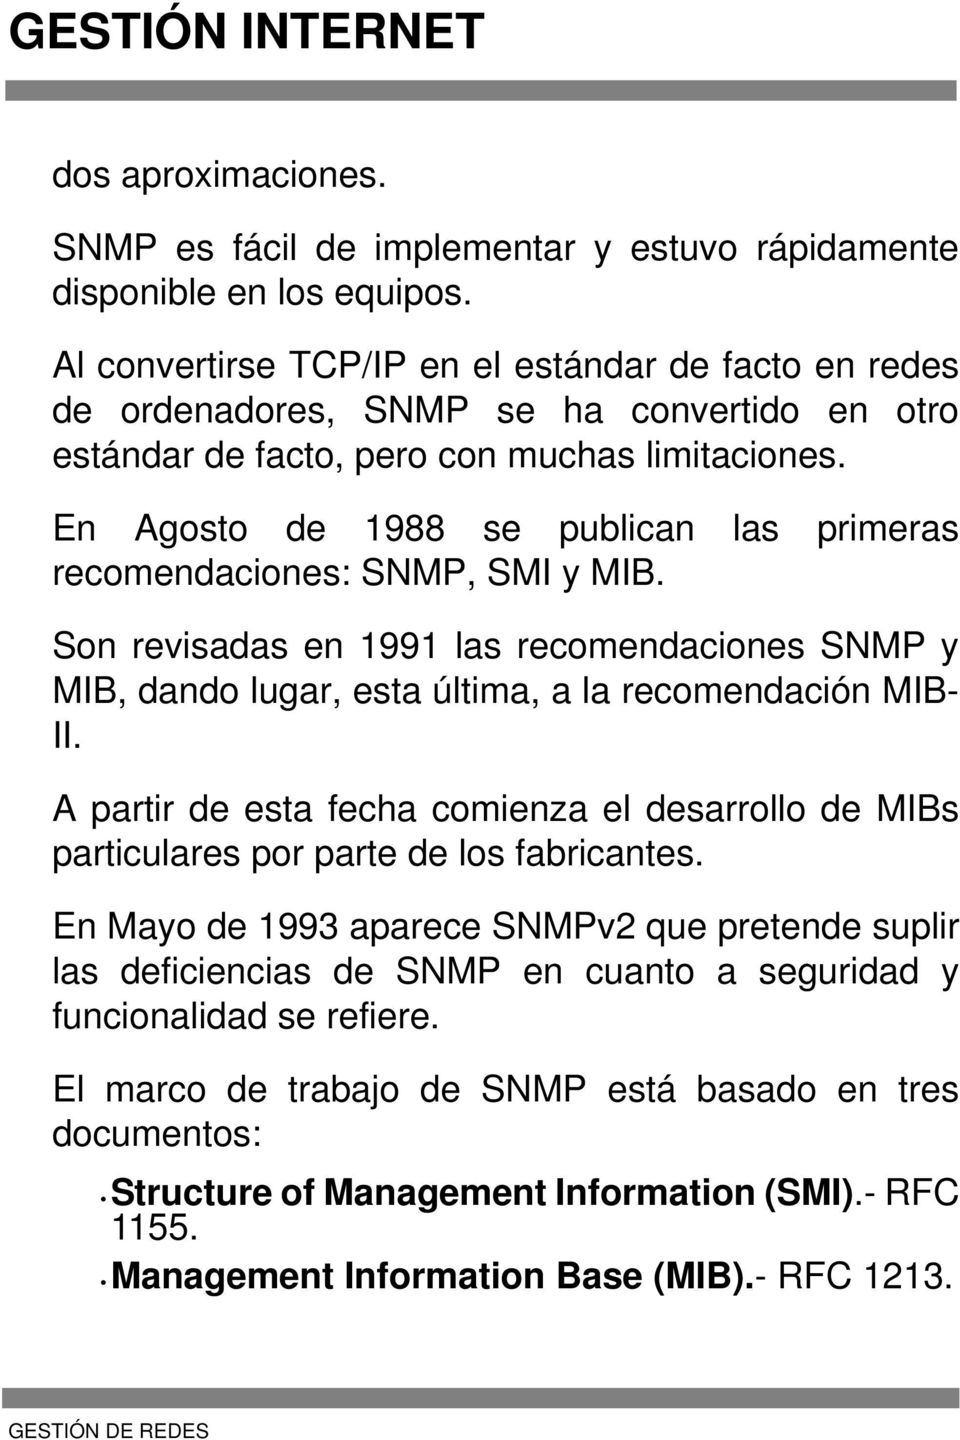 En Agosto de 1988 se publican las primeras recomendaciones: SNMP, SMI y MIB. Son revisadas en 1991 las recomendaciones SNMP y MIB, dando lugar, esta última, a la recomendación MIB- II.